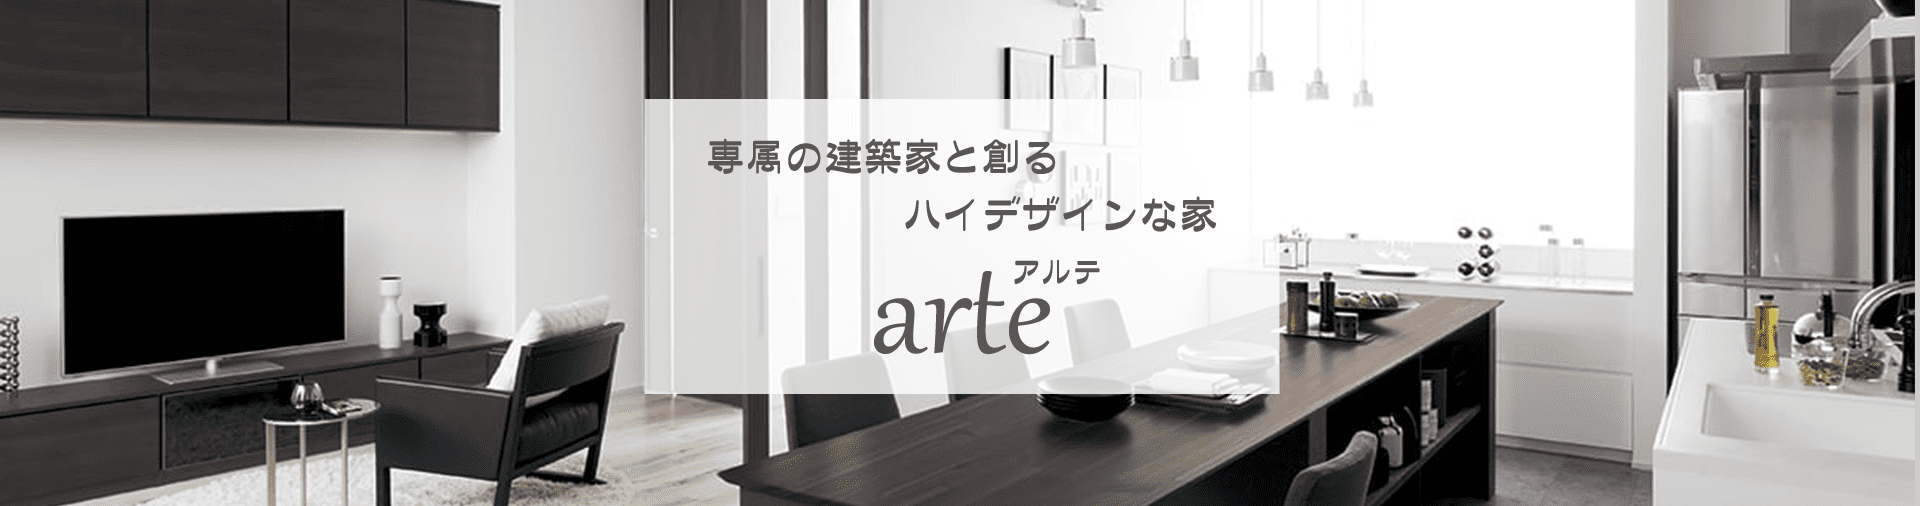 商品ラインナップ【arte】-大阪・堺の工務店ラックハウジング